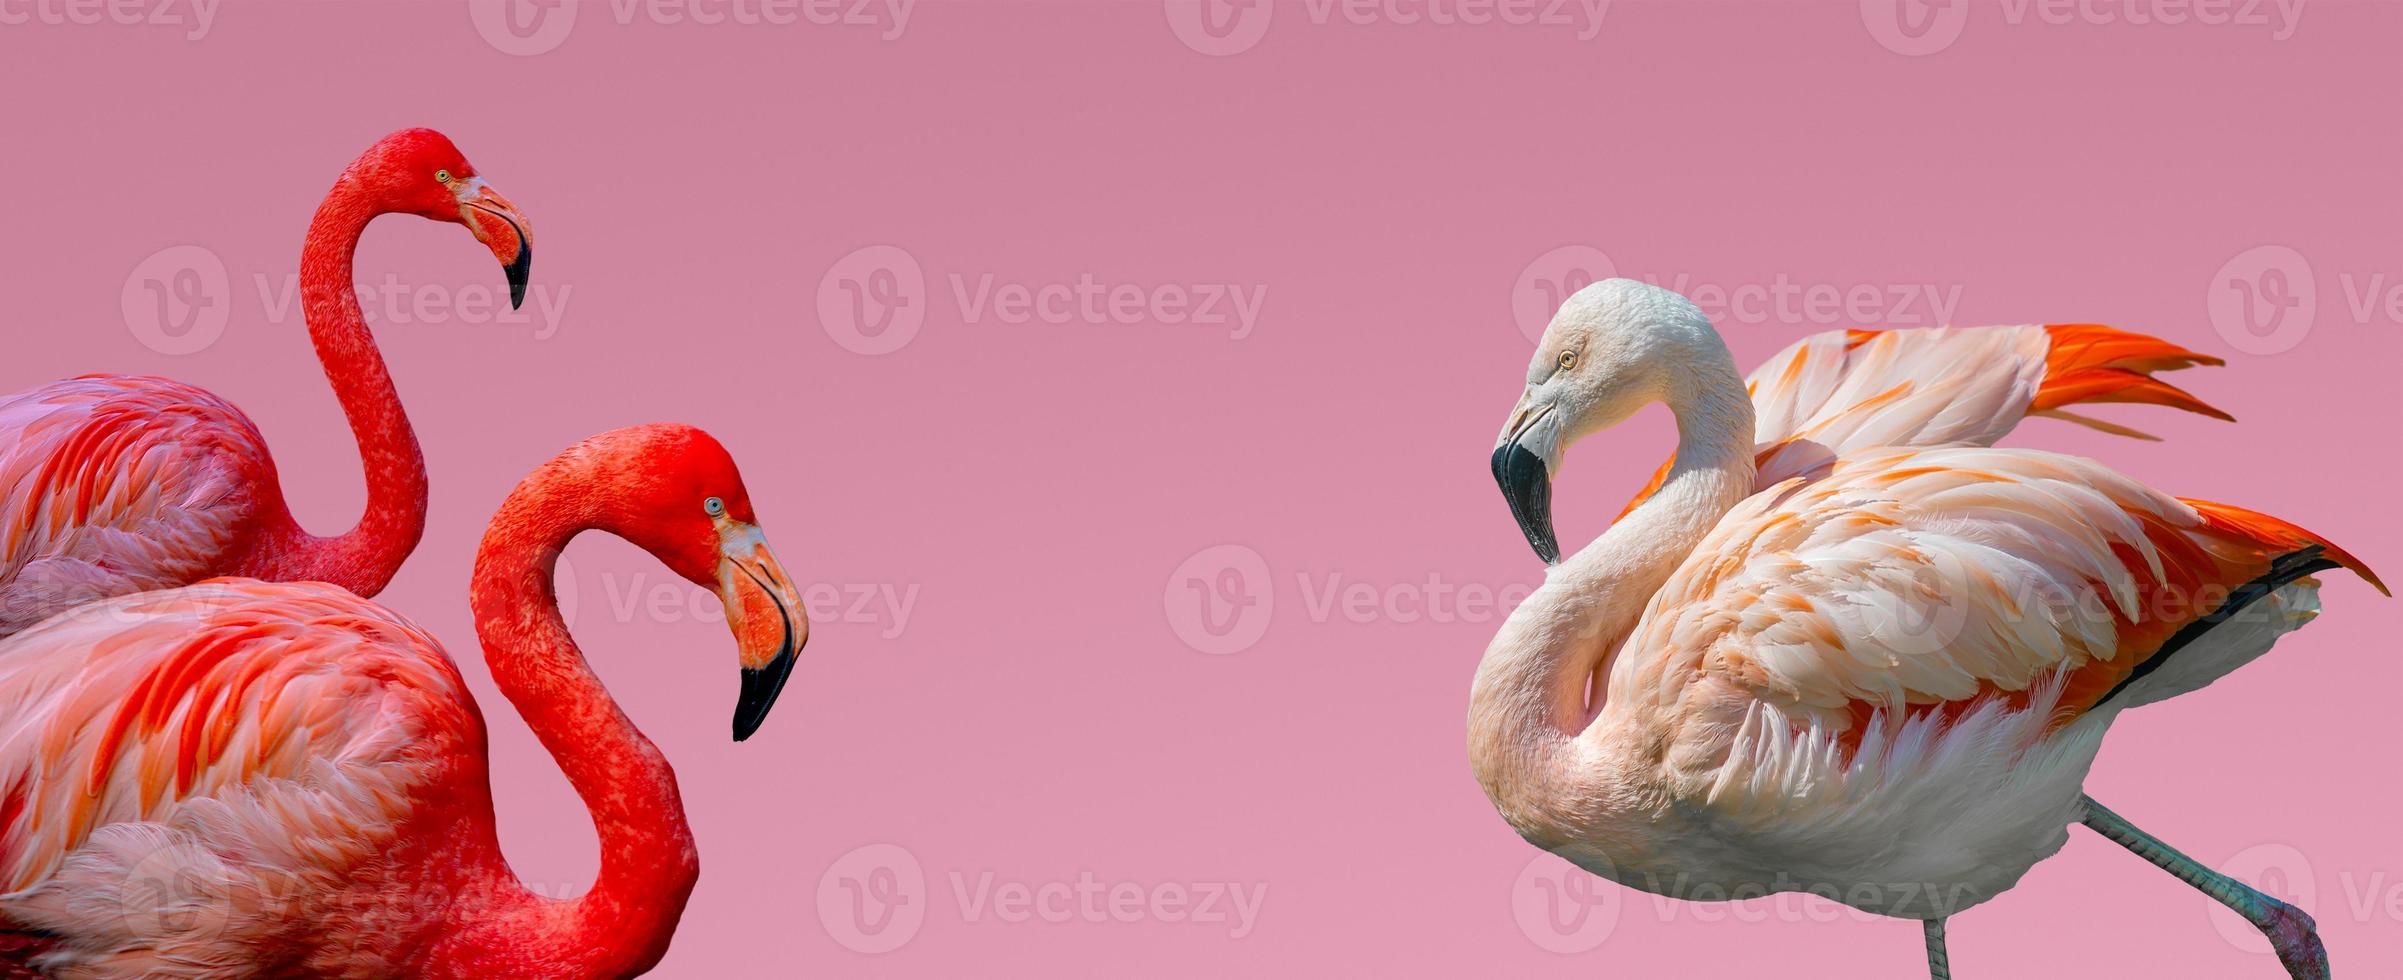 Banner mit schönen roten und rosigen Flamingos einzeln auf rosafarbenem Hintergrund mit Farbverlauf mit Kopienraum für Text, Nahaufnahme, Details. Liebe, Pflege, Dating und Glamour-Konzept. foto